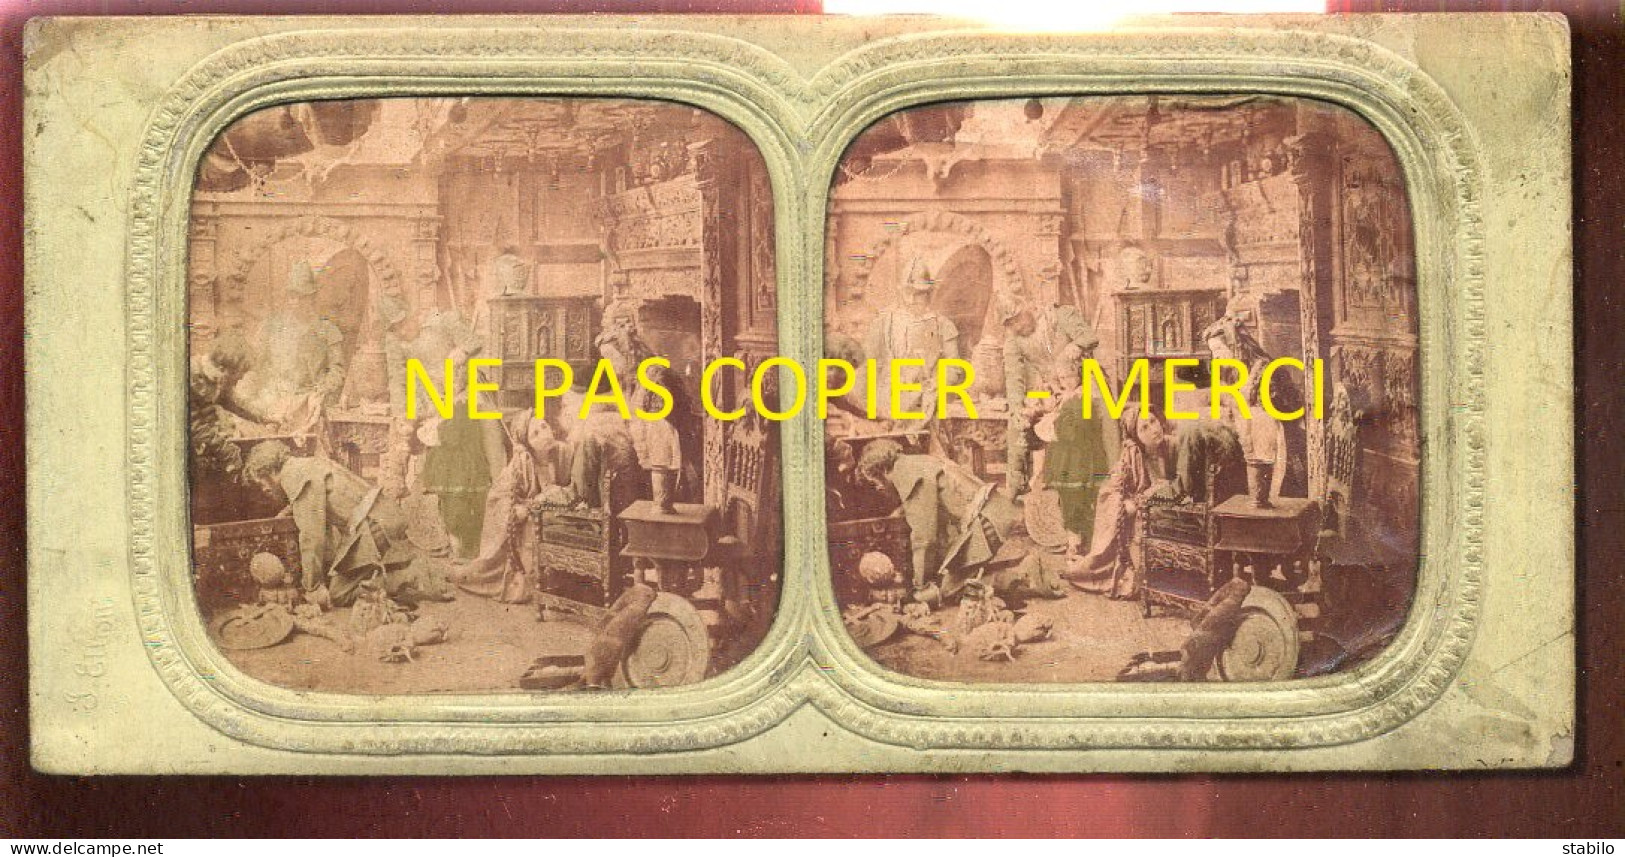 PHOTO STEREO CIRCA 1860 - TRANSPARENTE - SCENE THEATRALE EN COSTUMES - FORMAT 17.5 X 8.5 CM - Photos Stéréoscopiques